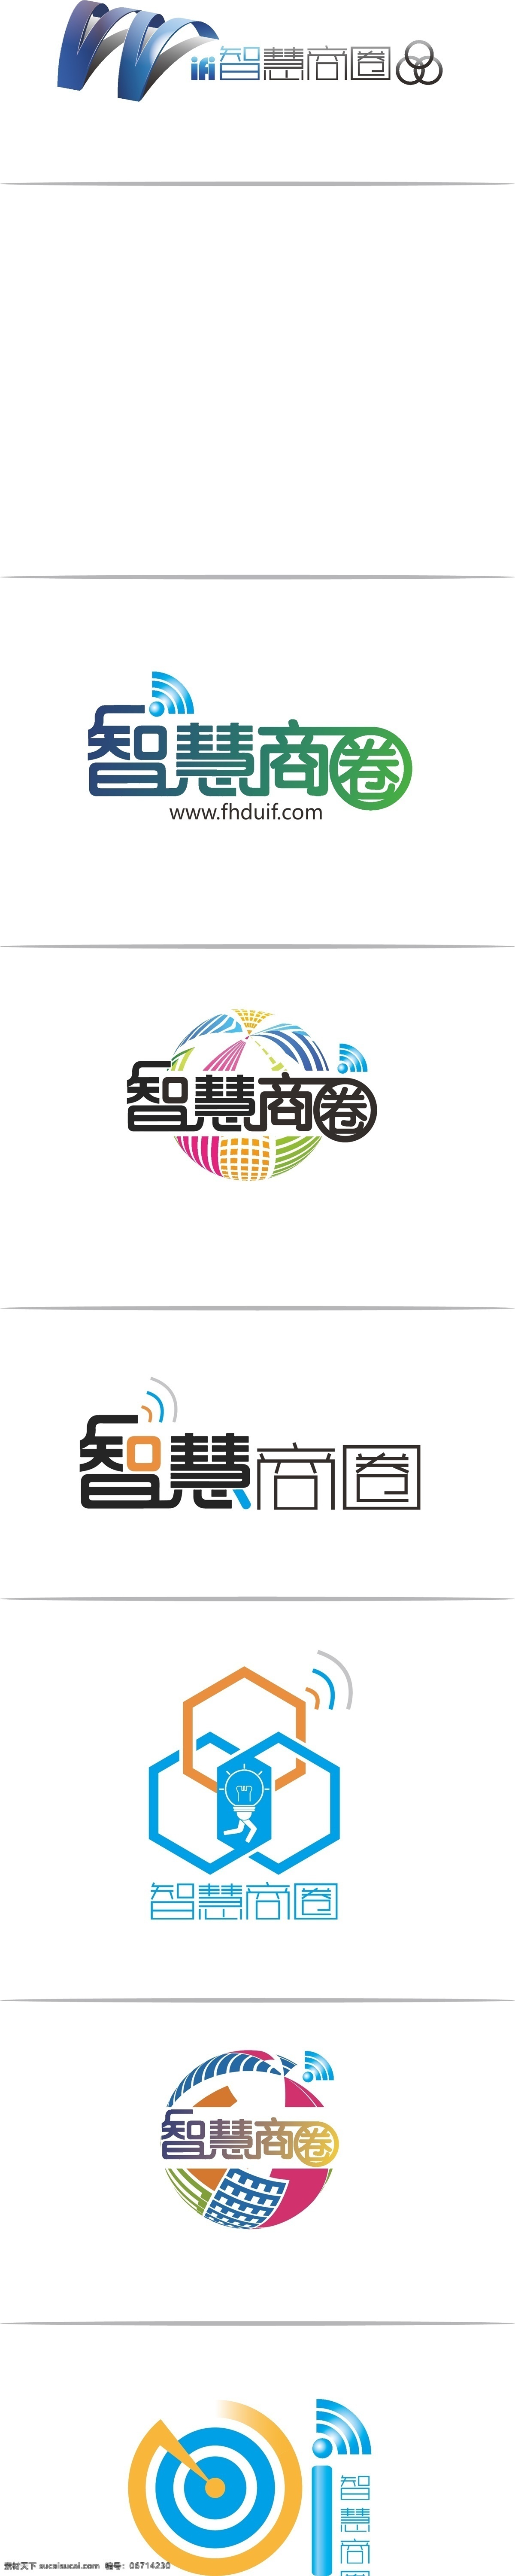 智慧 商圈 logo 各种标志用 logo设计 企业 智慧商圈 科技 高端 大气 时尚 白色